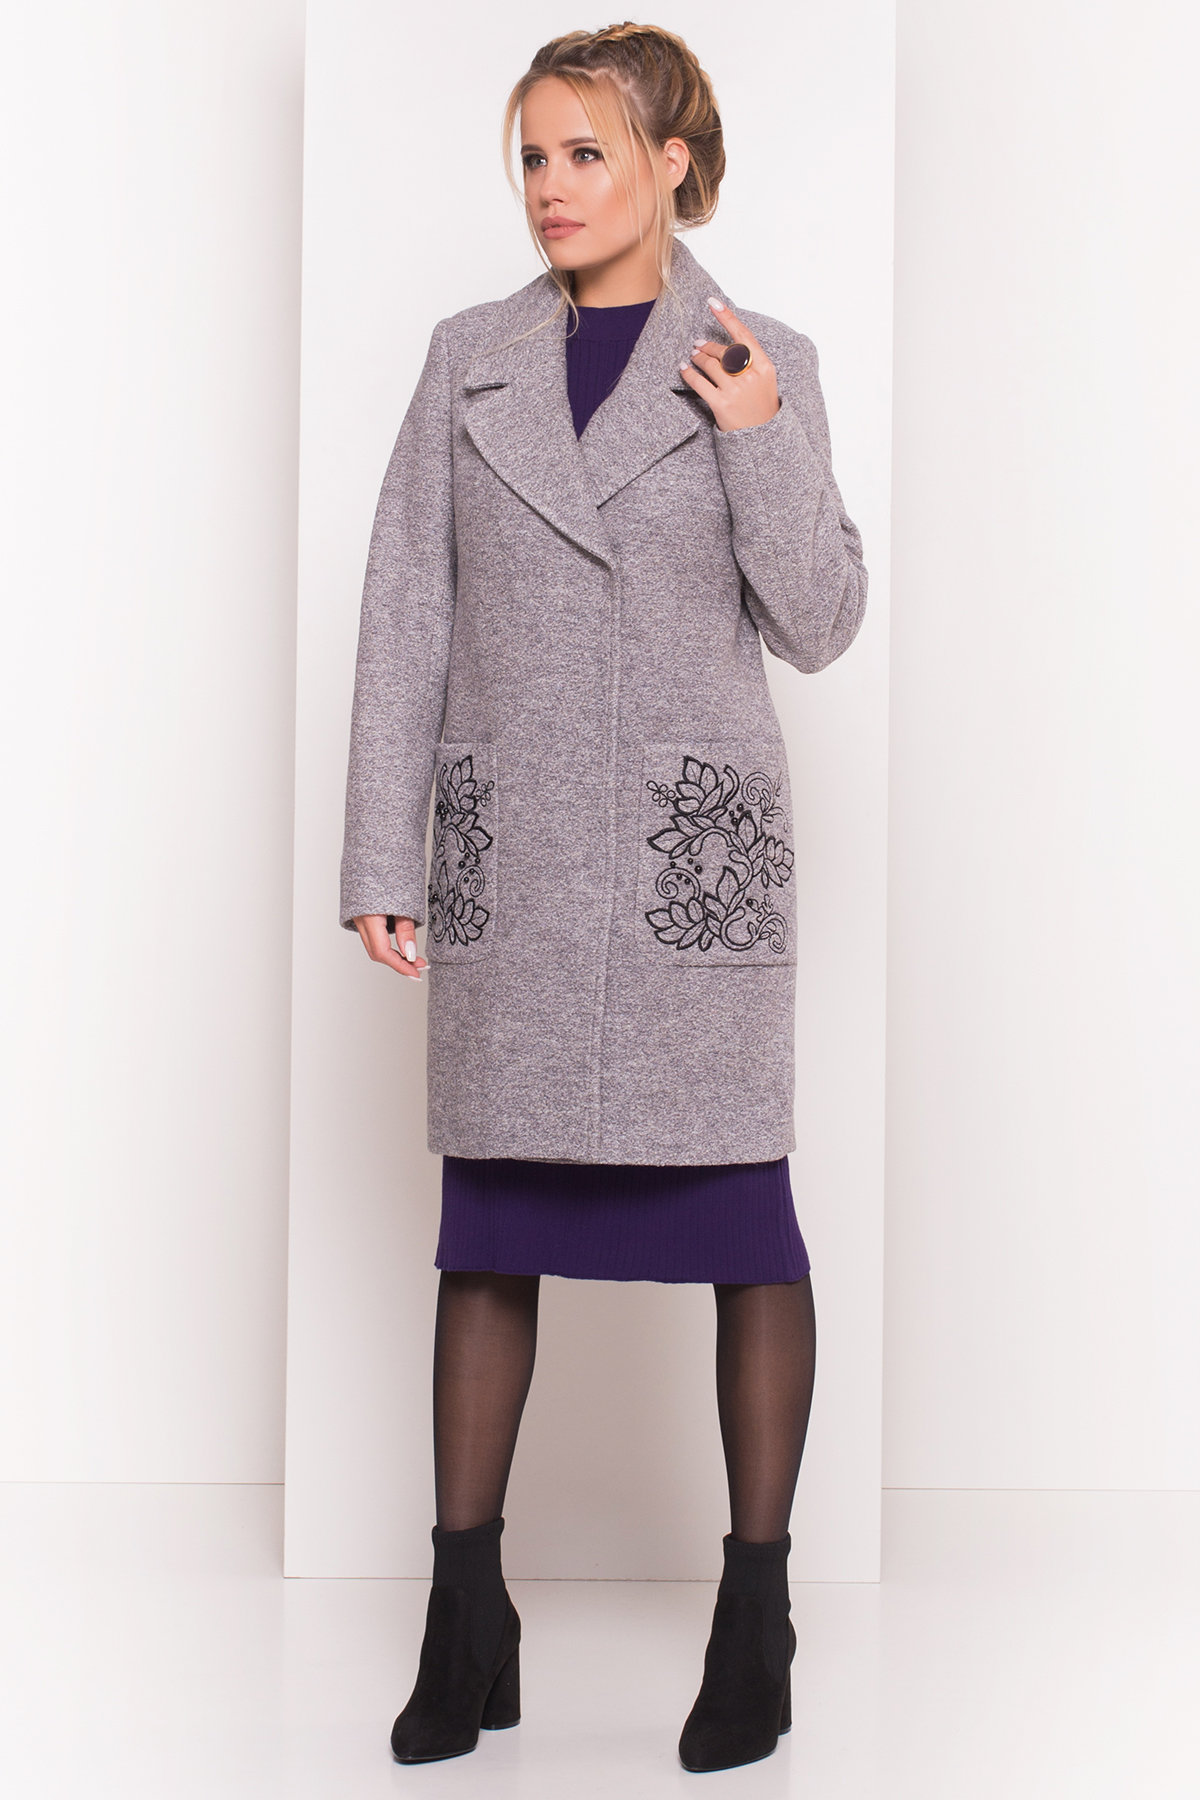 Демисезонное пальто из варенной шерсти Милена 5273 АРТ. 37587 Цвет: Серый LW-10 - фото 4, интернет магазин tm-modus.ru